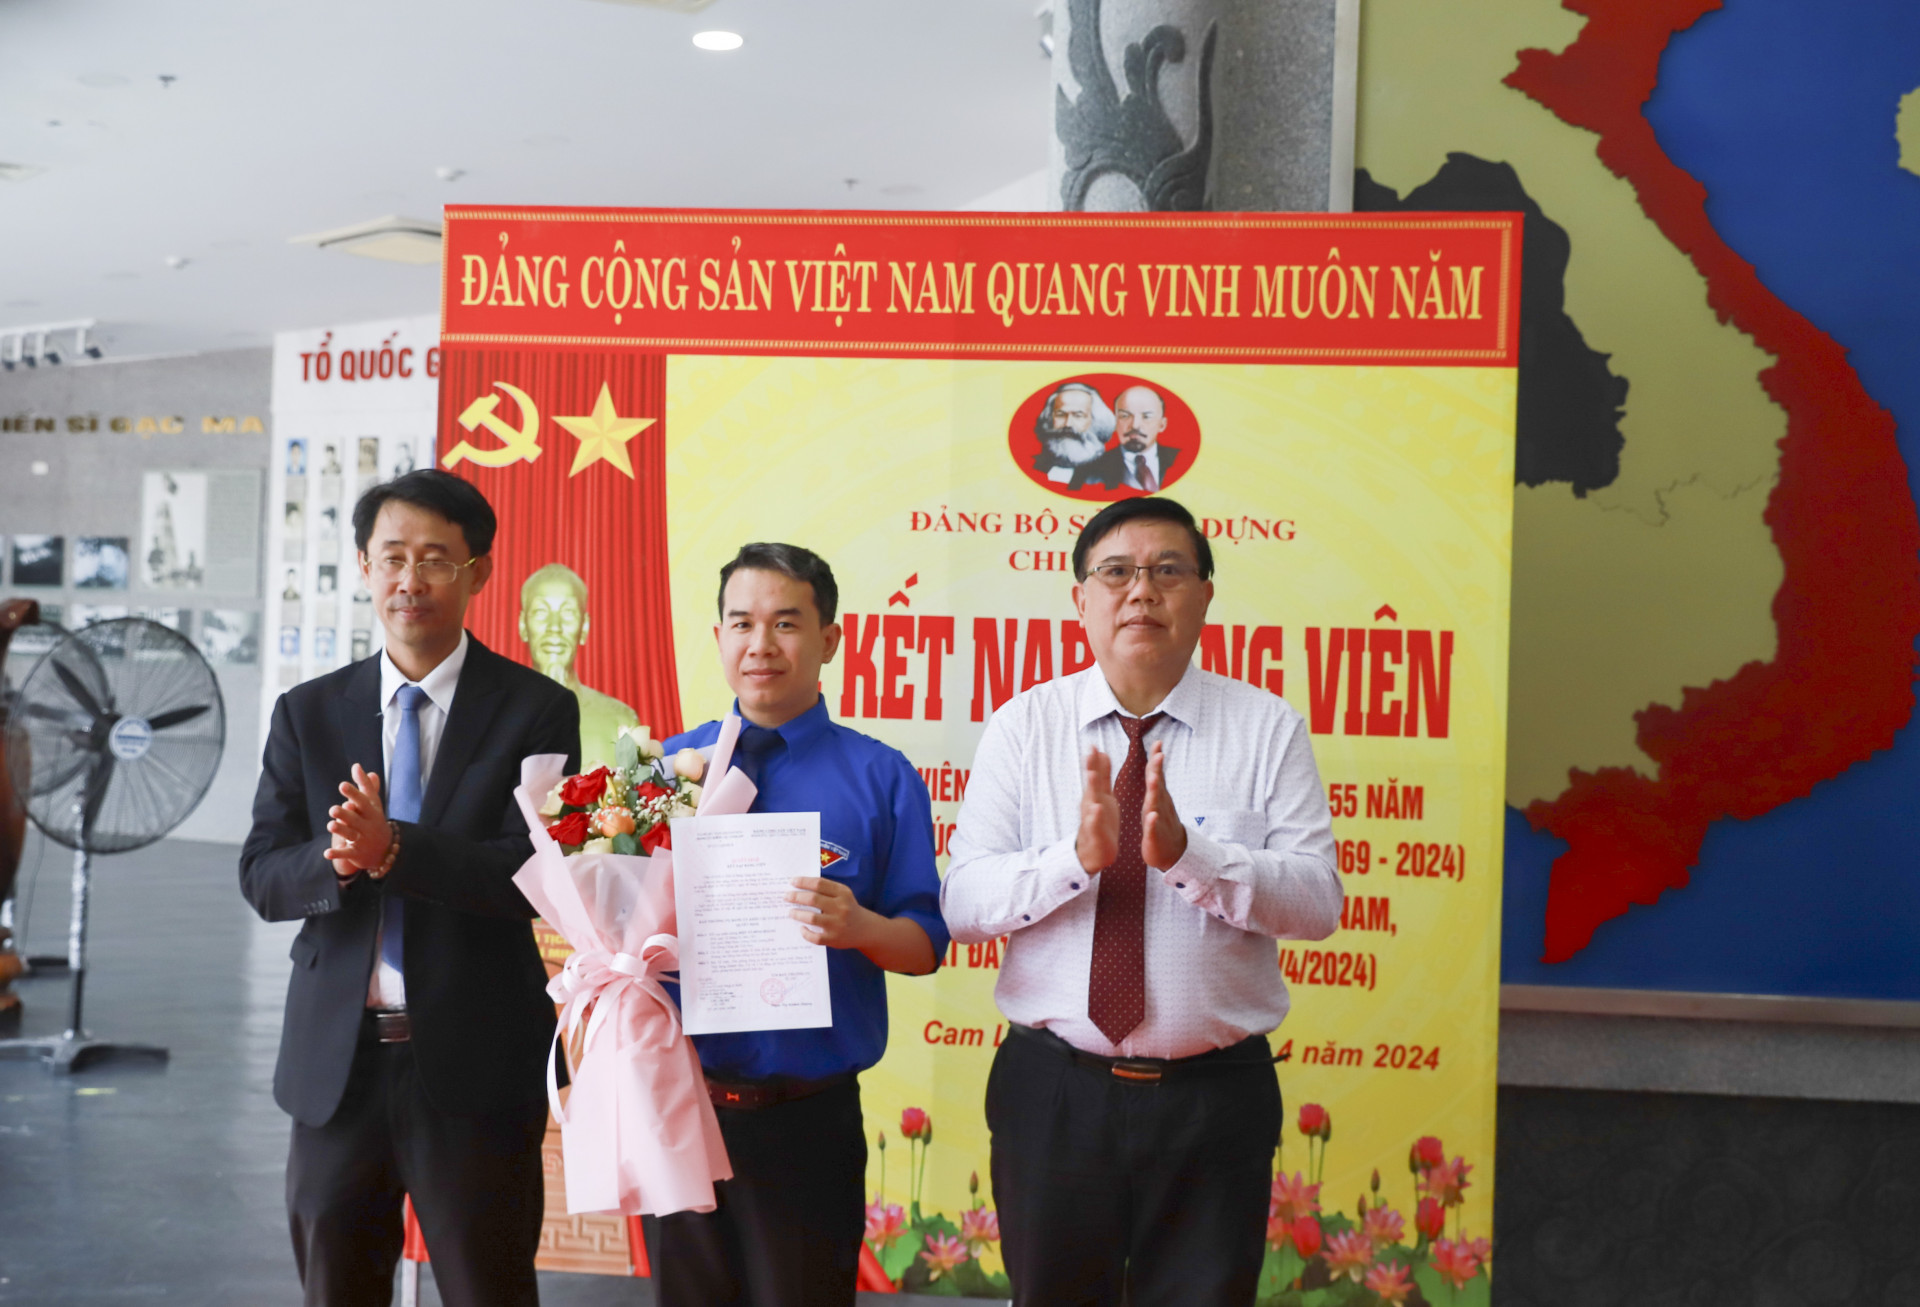 Ông Trịnh Văn Mơ - Phó Bí thư Đảng ủy Khối các cơ quan tỉnh (bên trái) và lãnh đạo Sở Xây dựng trao quyết định, tặng hoa chúc mừng đảng viên mới Diệp Võ Đinh Hoàng.